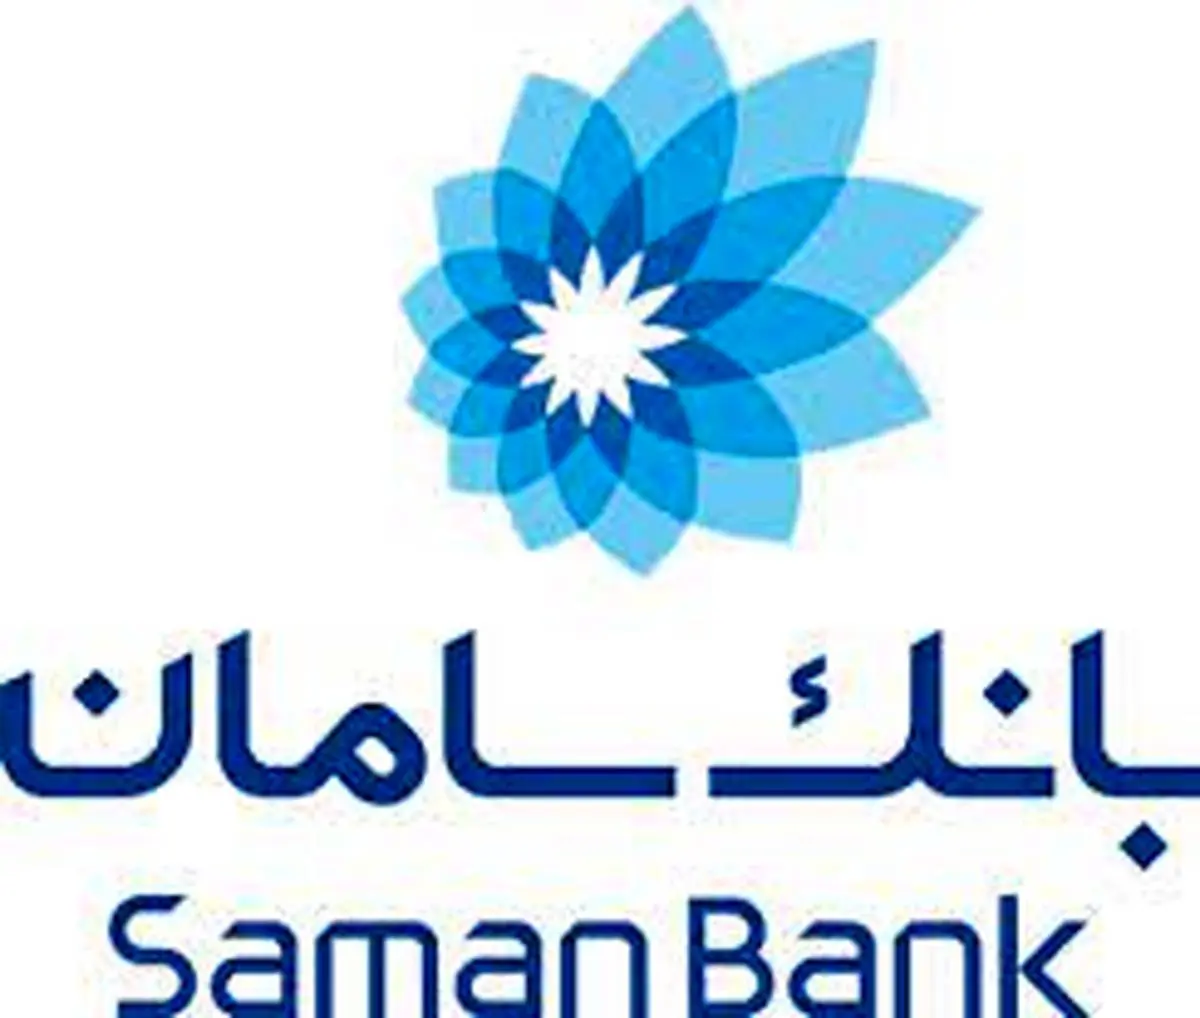 سنجش آمادگی کارکنان بانک سامان در برابر حوادث غیرمترقبه